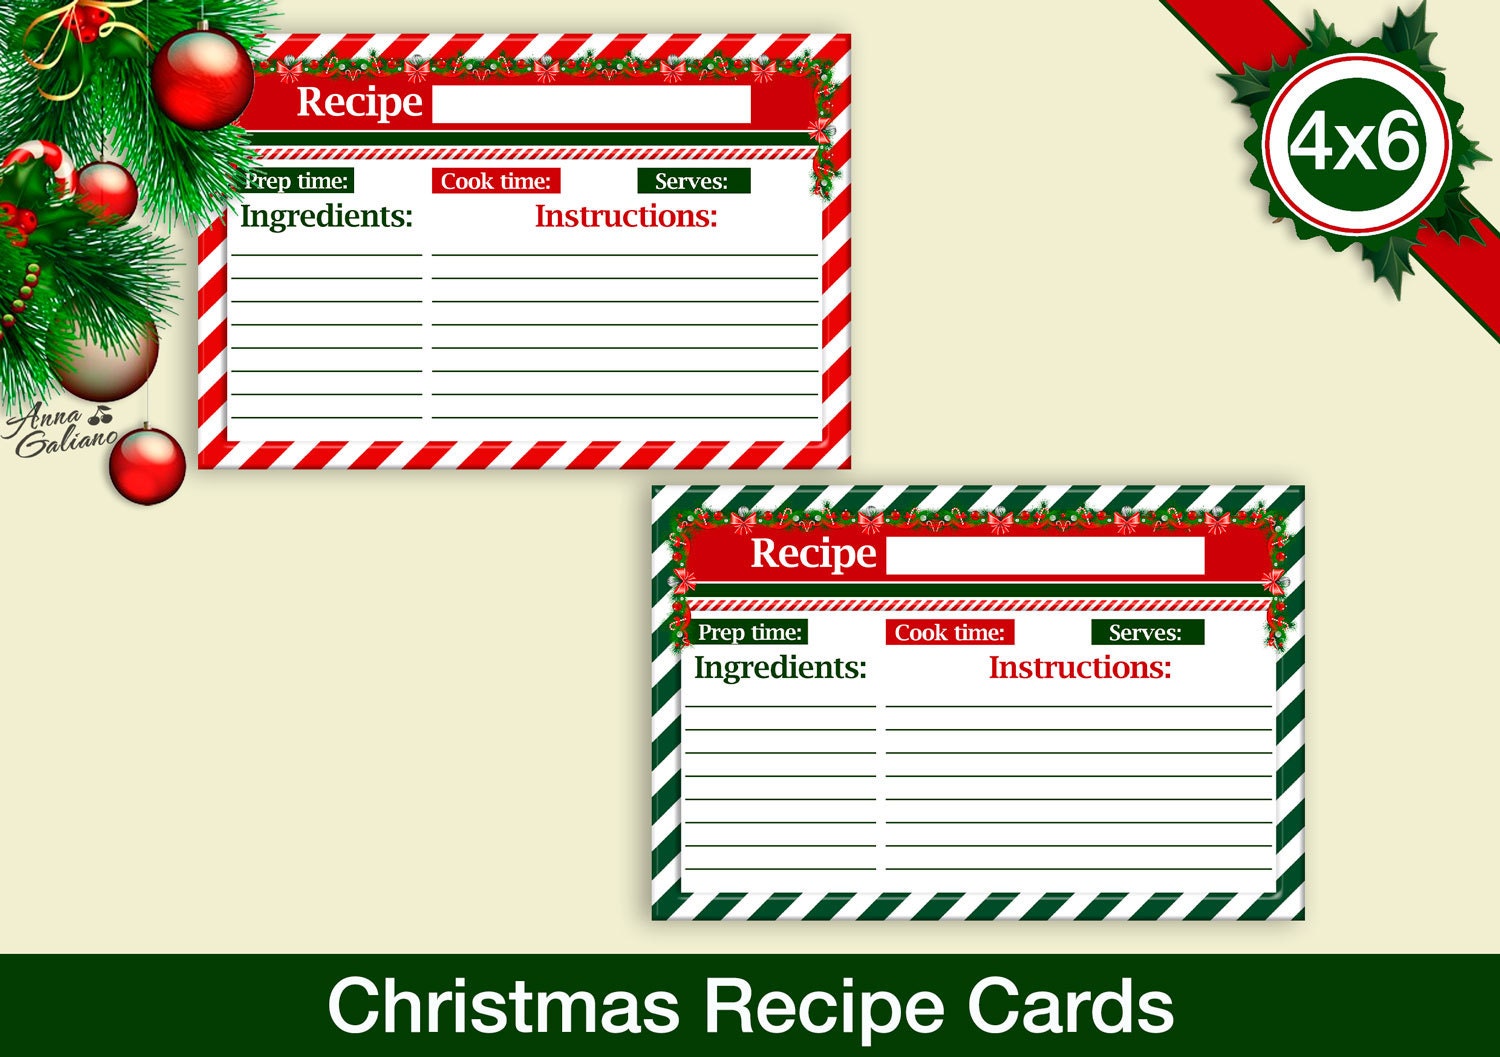 4x6 recipe card template